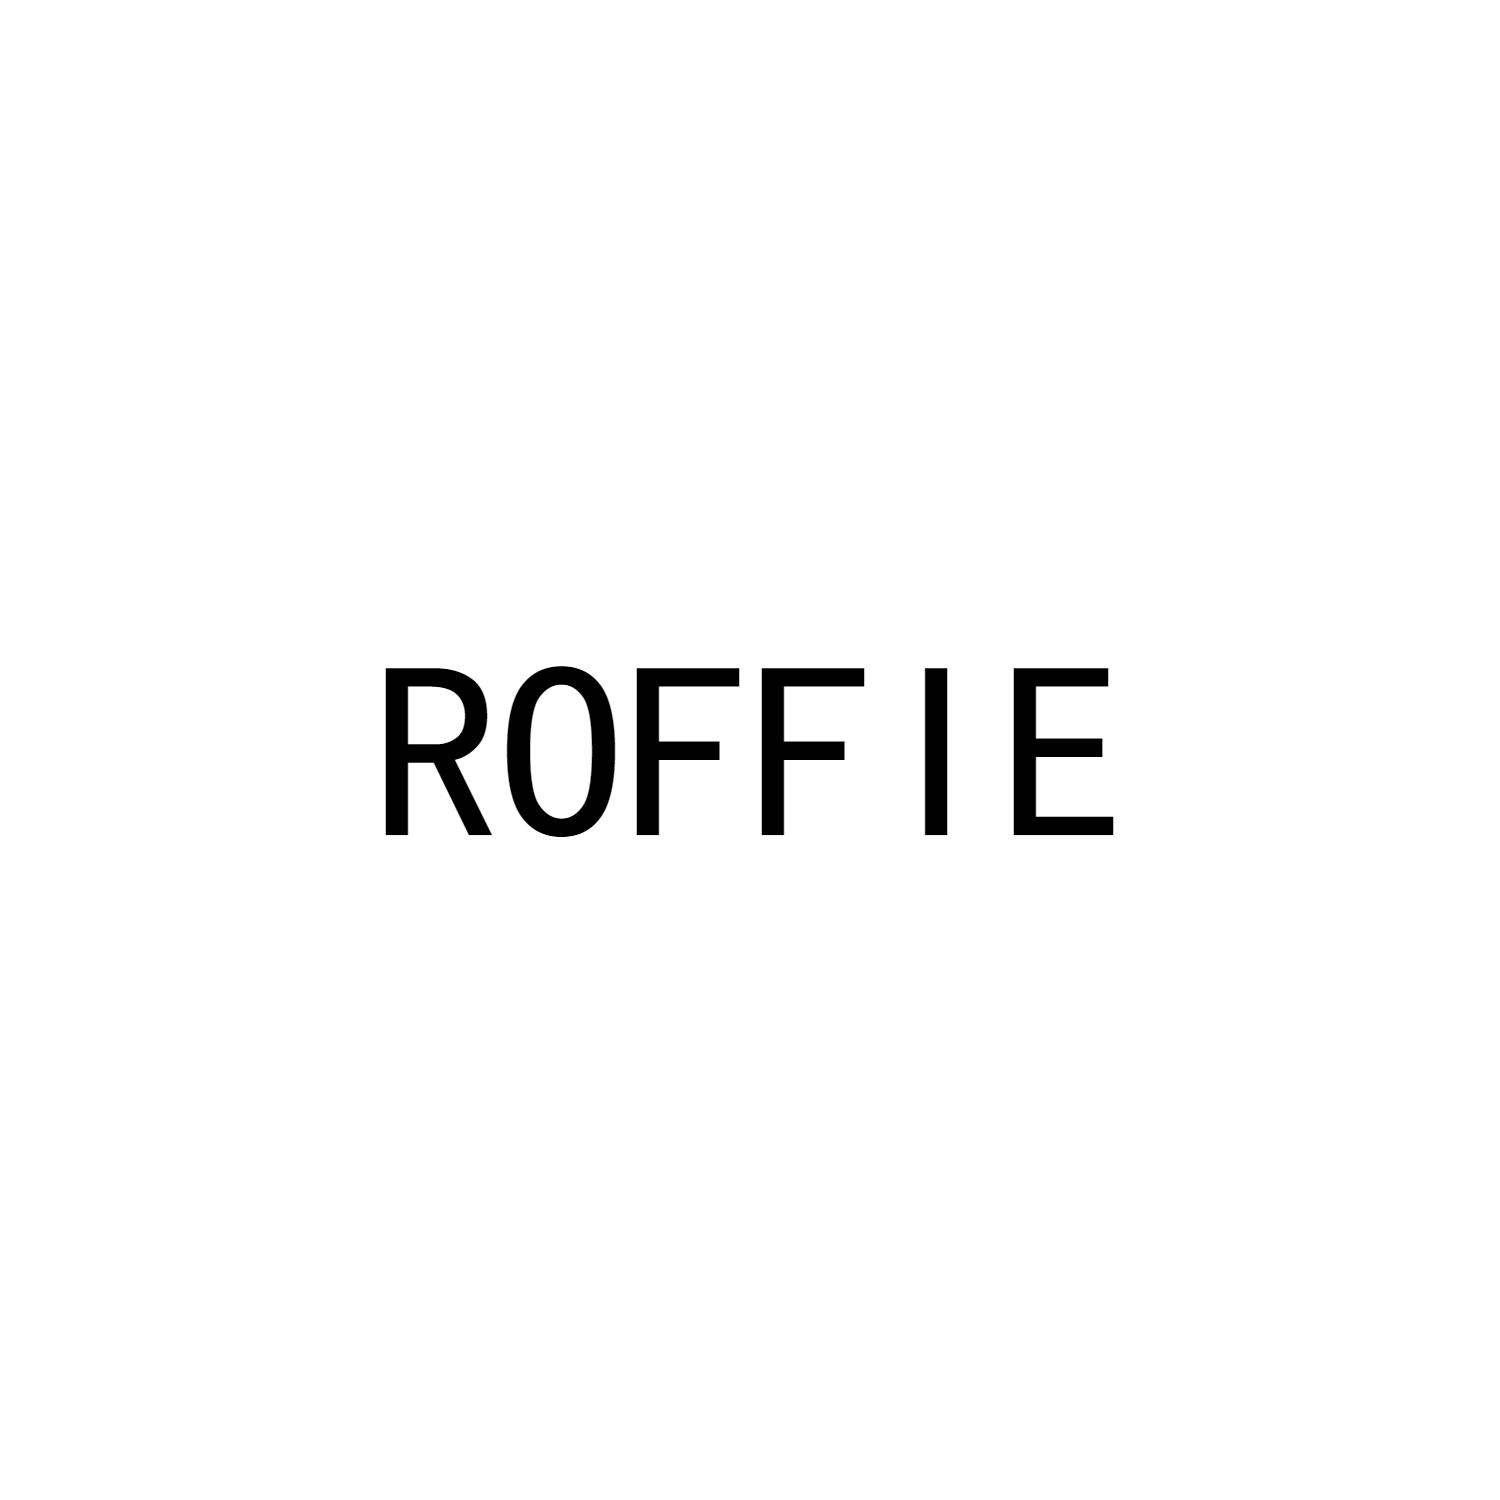 ROFFIE